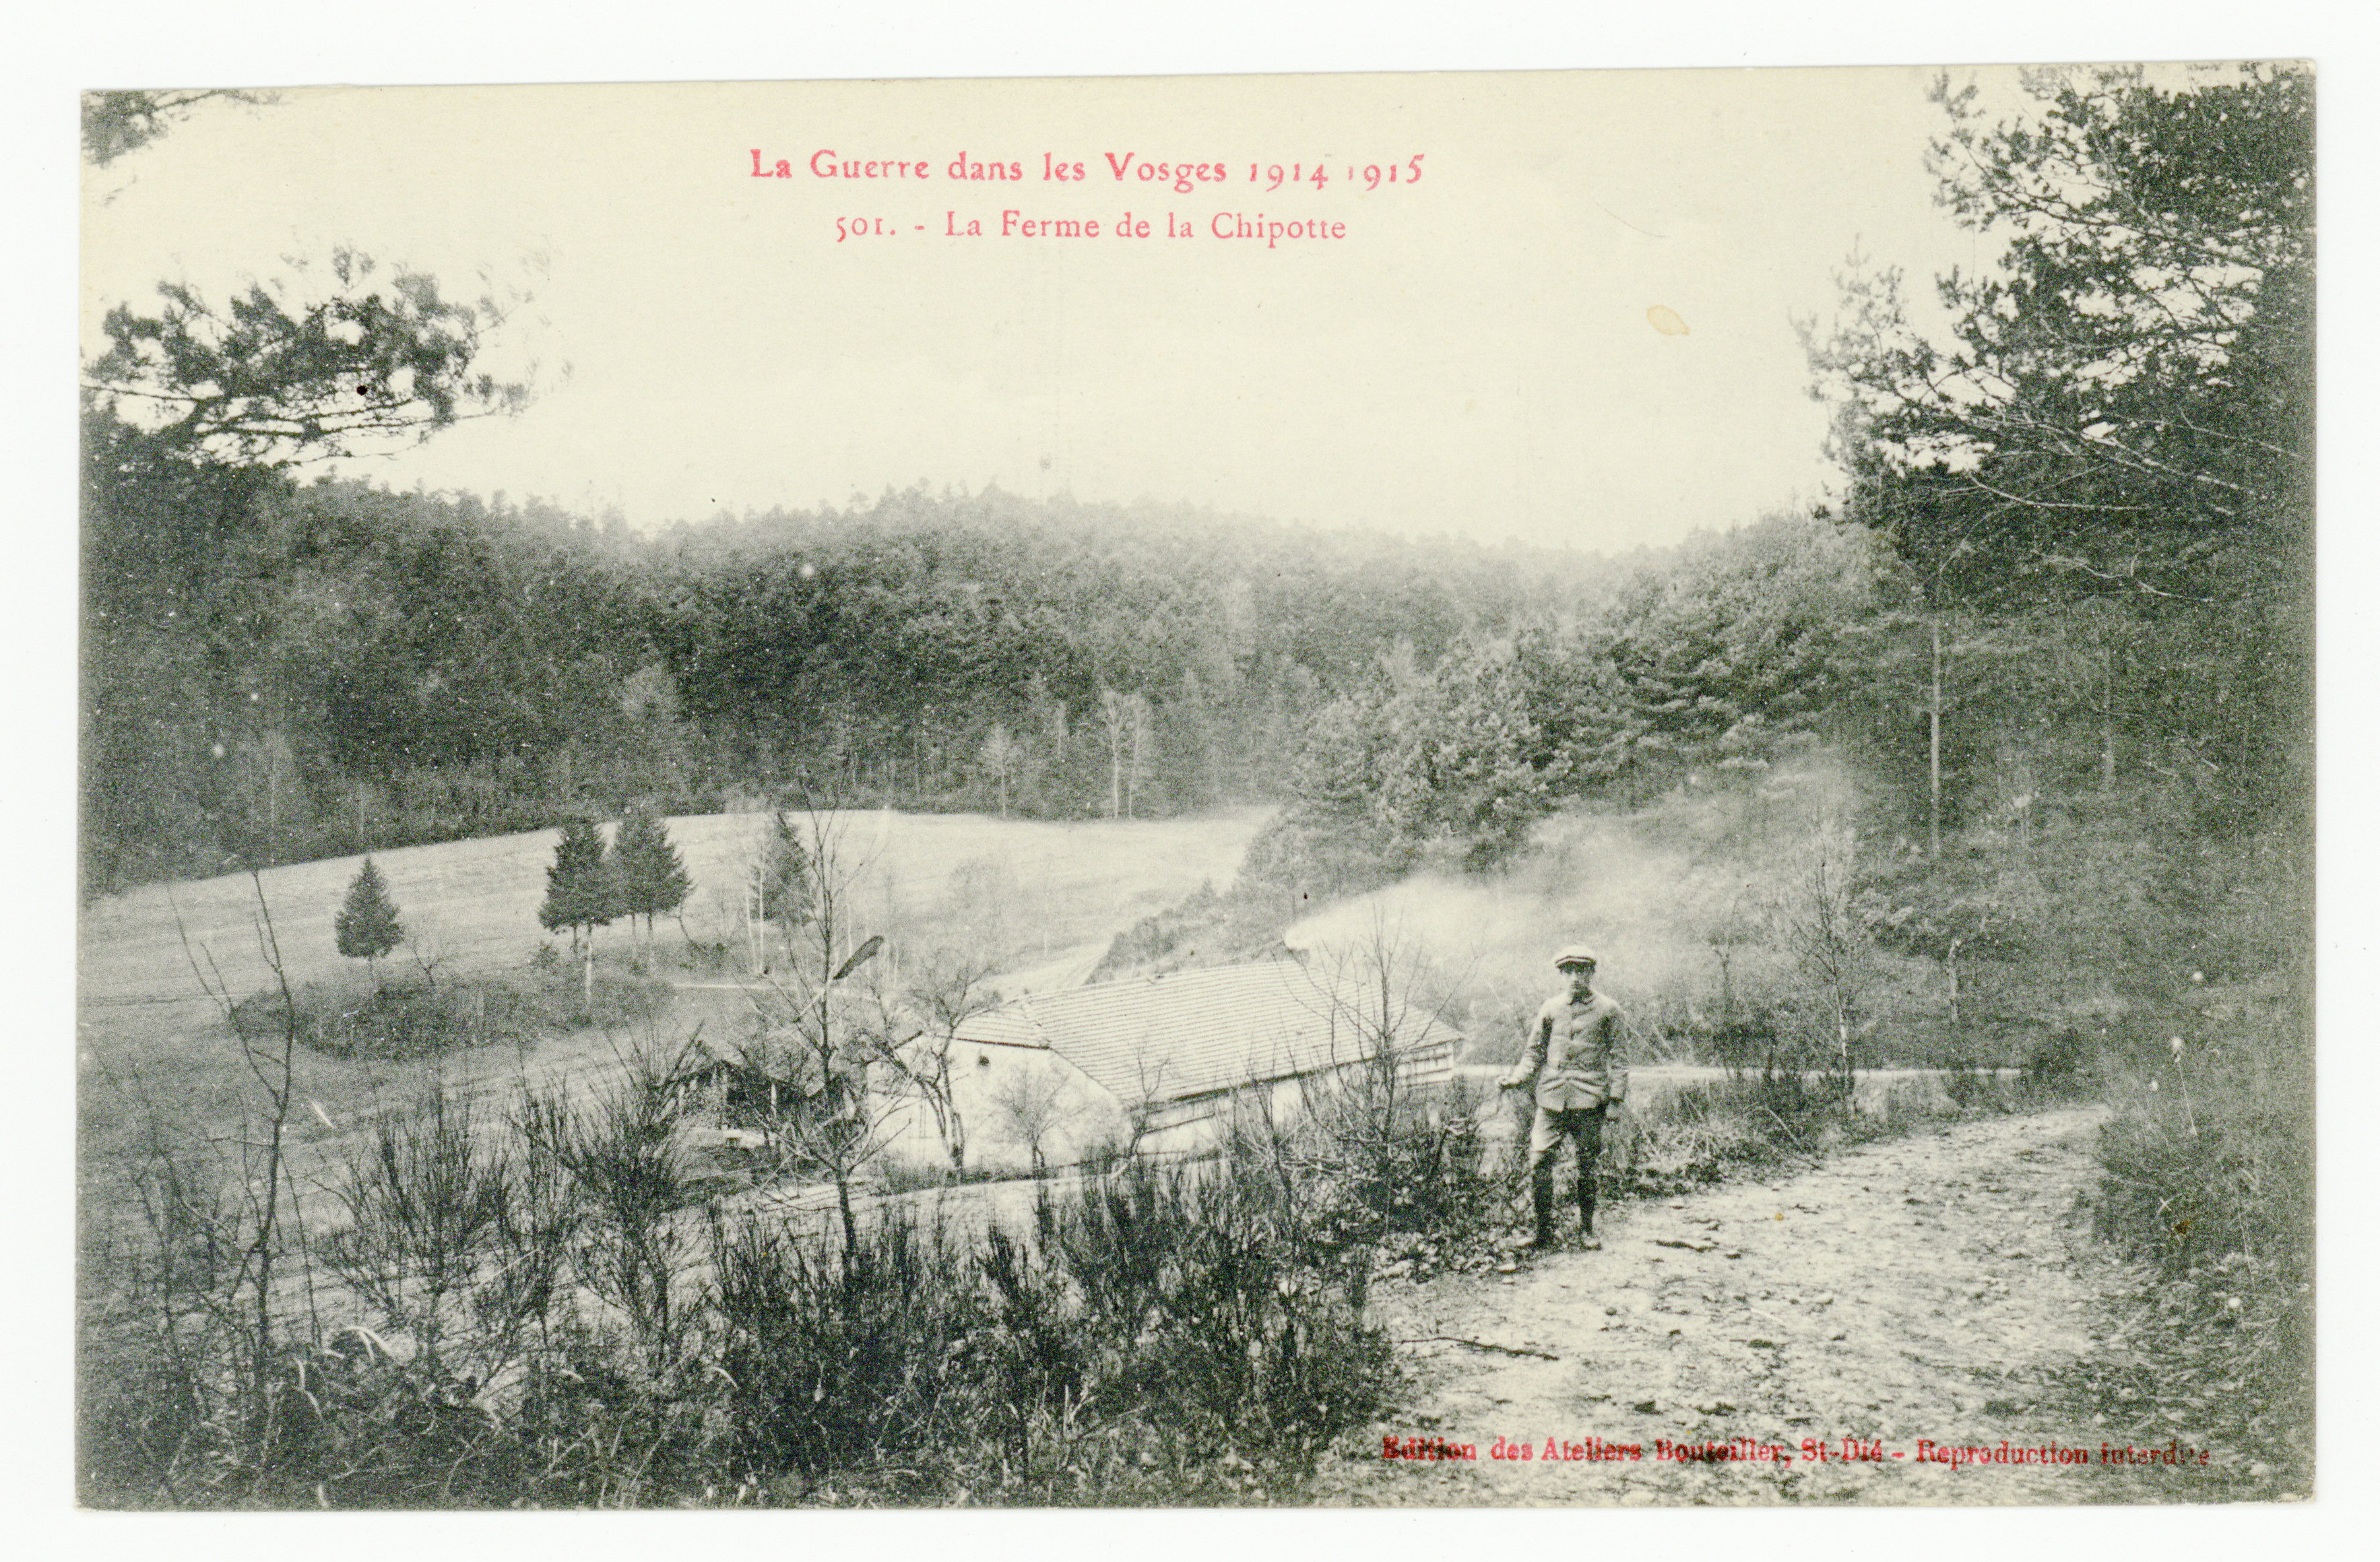 Contenu du La ferme de la Chipotte, la guerre dans les Vosges. 1914-1915